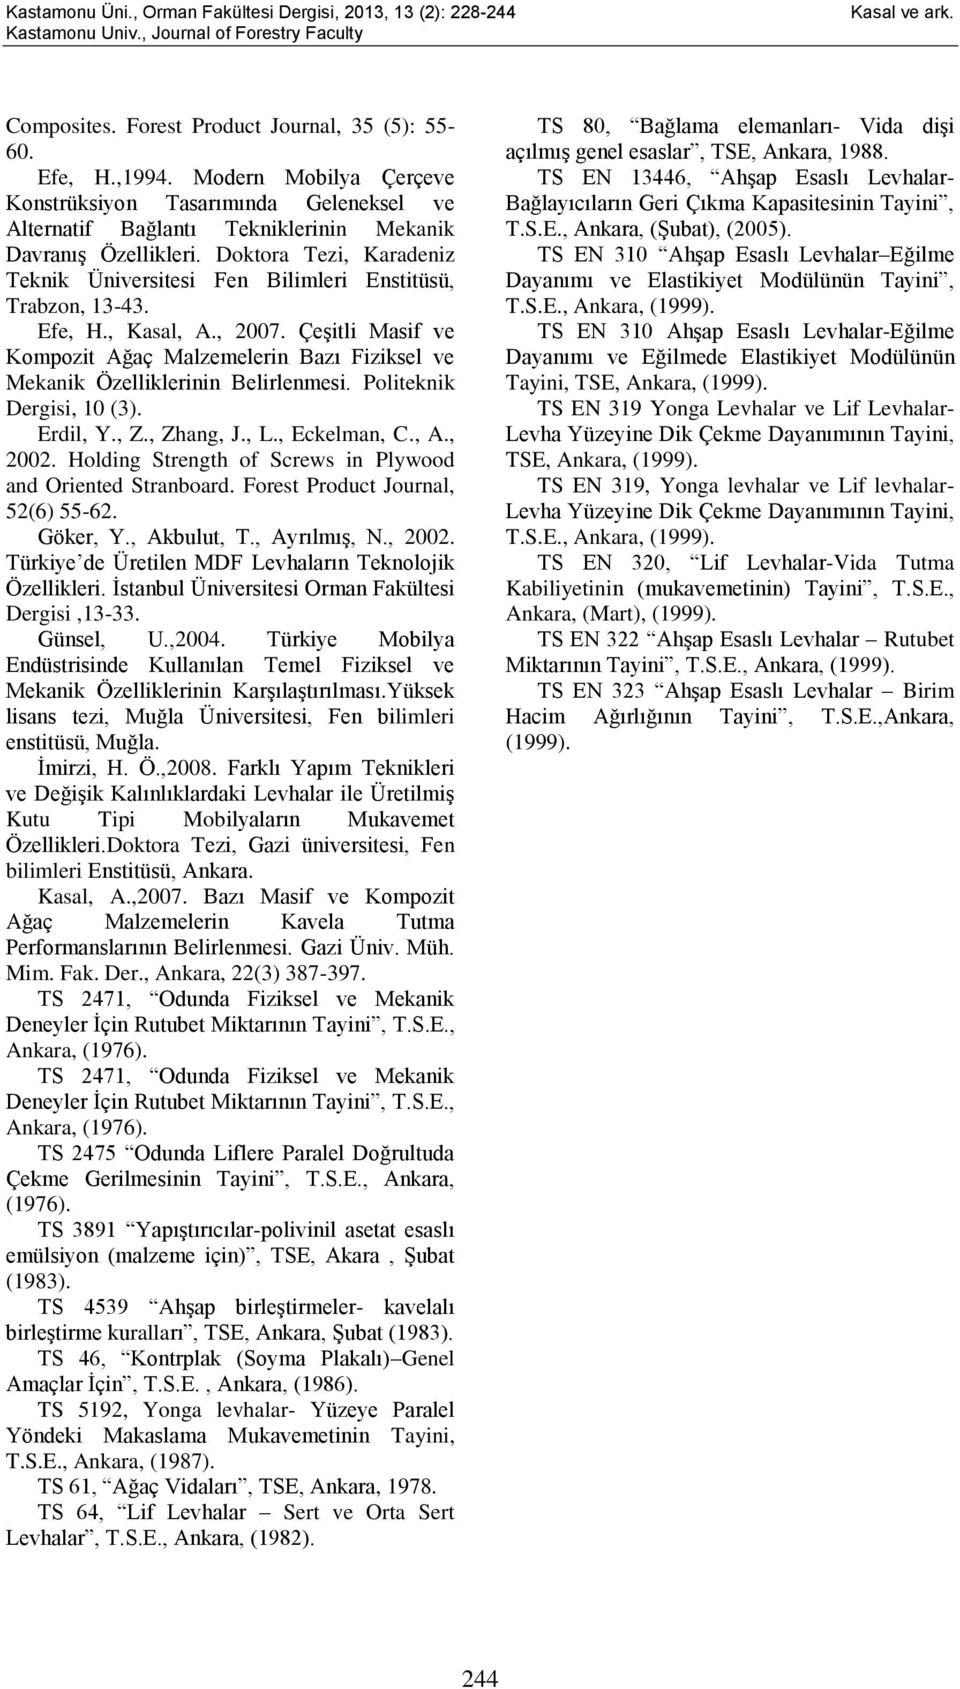 Çeşitli Masif ve Kompozit Ağaç Malzemelerin Bazı Fiziksel ve Mekanik Özelliklerinin Belirlenmesi. Politeknik Dergisi, 10 (3). Erdil, Y., Z., Zhang, J., L., Eckelman, C., A., 2002.